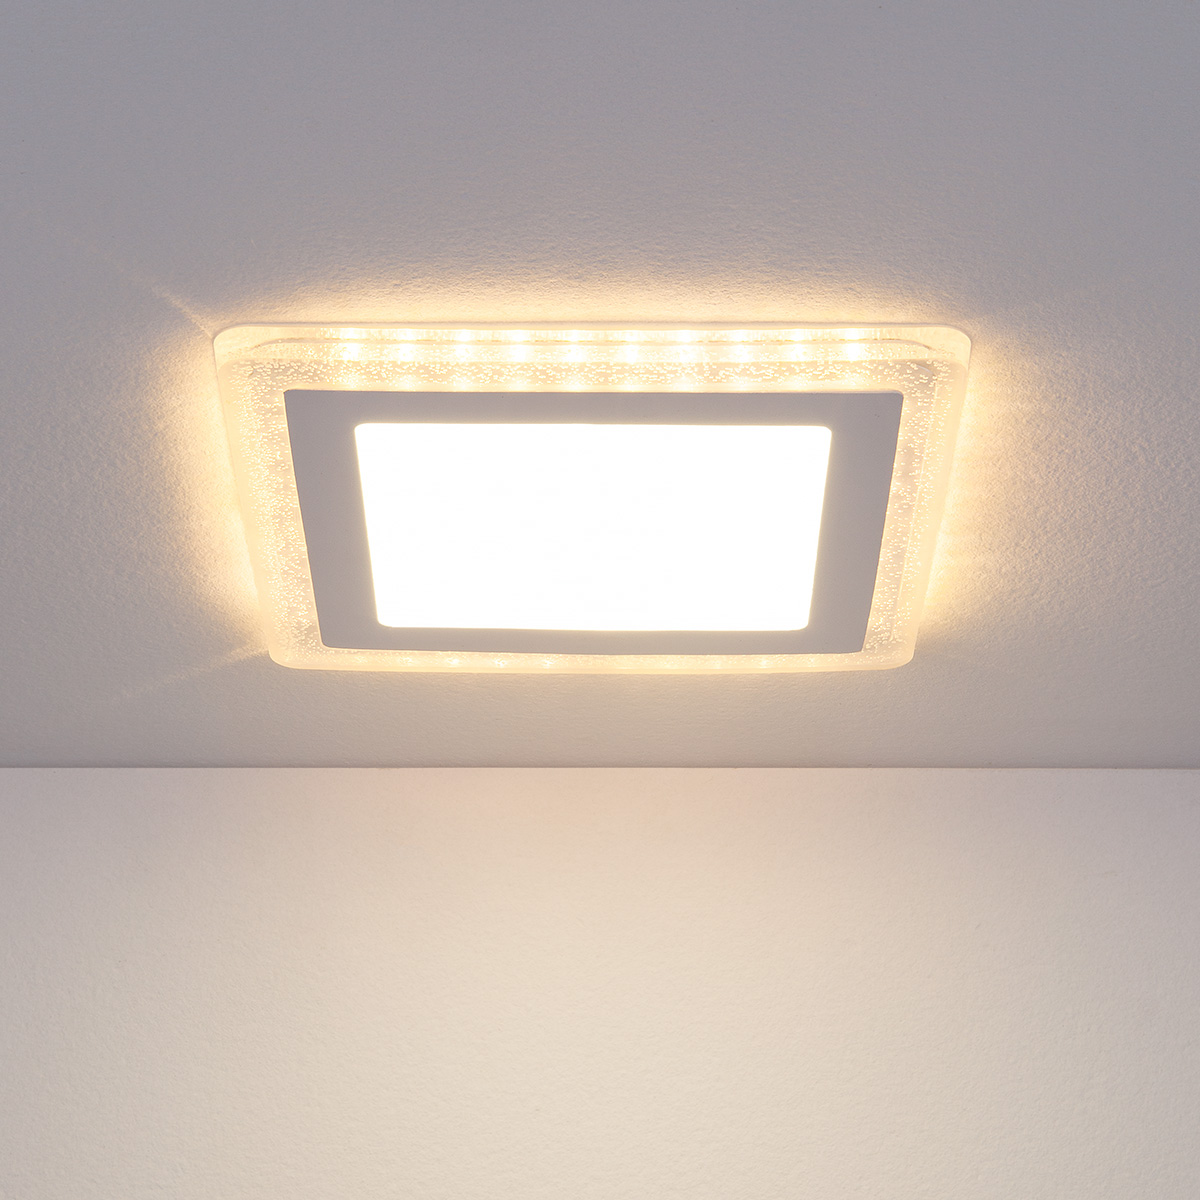 Встраиваемый потолочный светодиодный светильник DLS024 10W 4200K